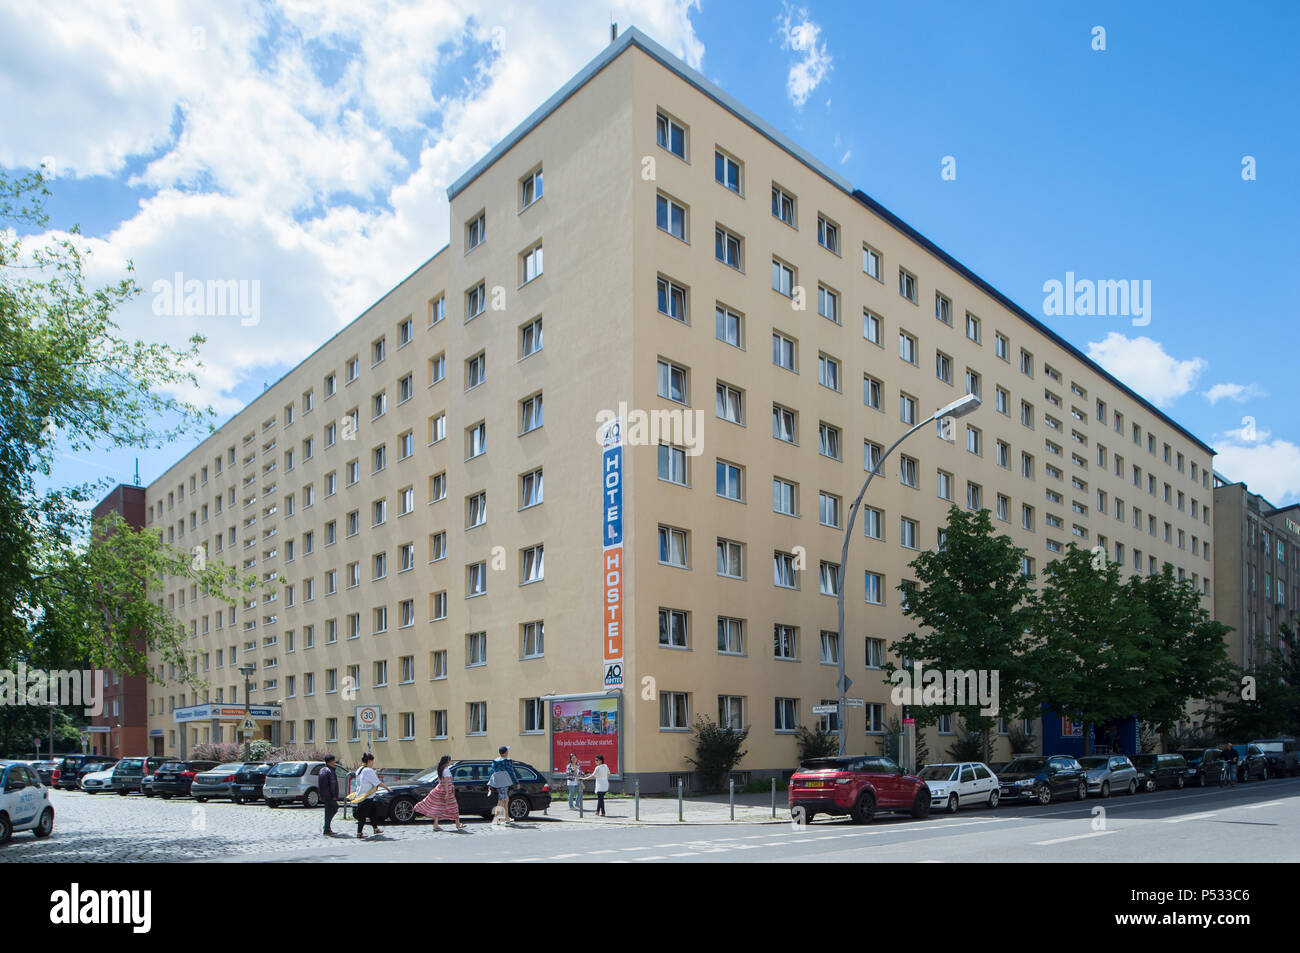 The AO Hotel / Hostel in Koepenicker Strasse in Berlin-Mitte Stock Photo